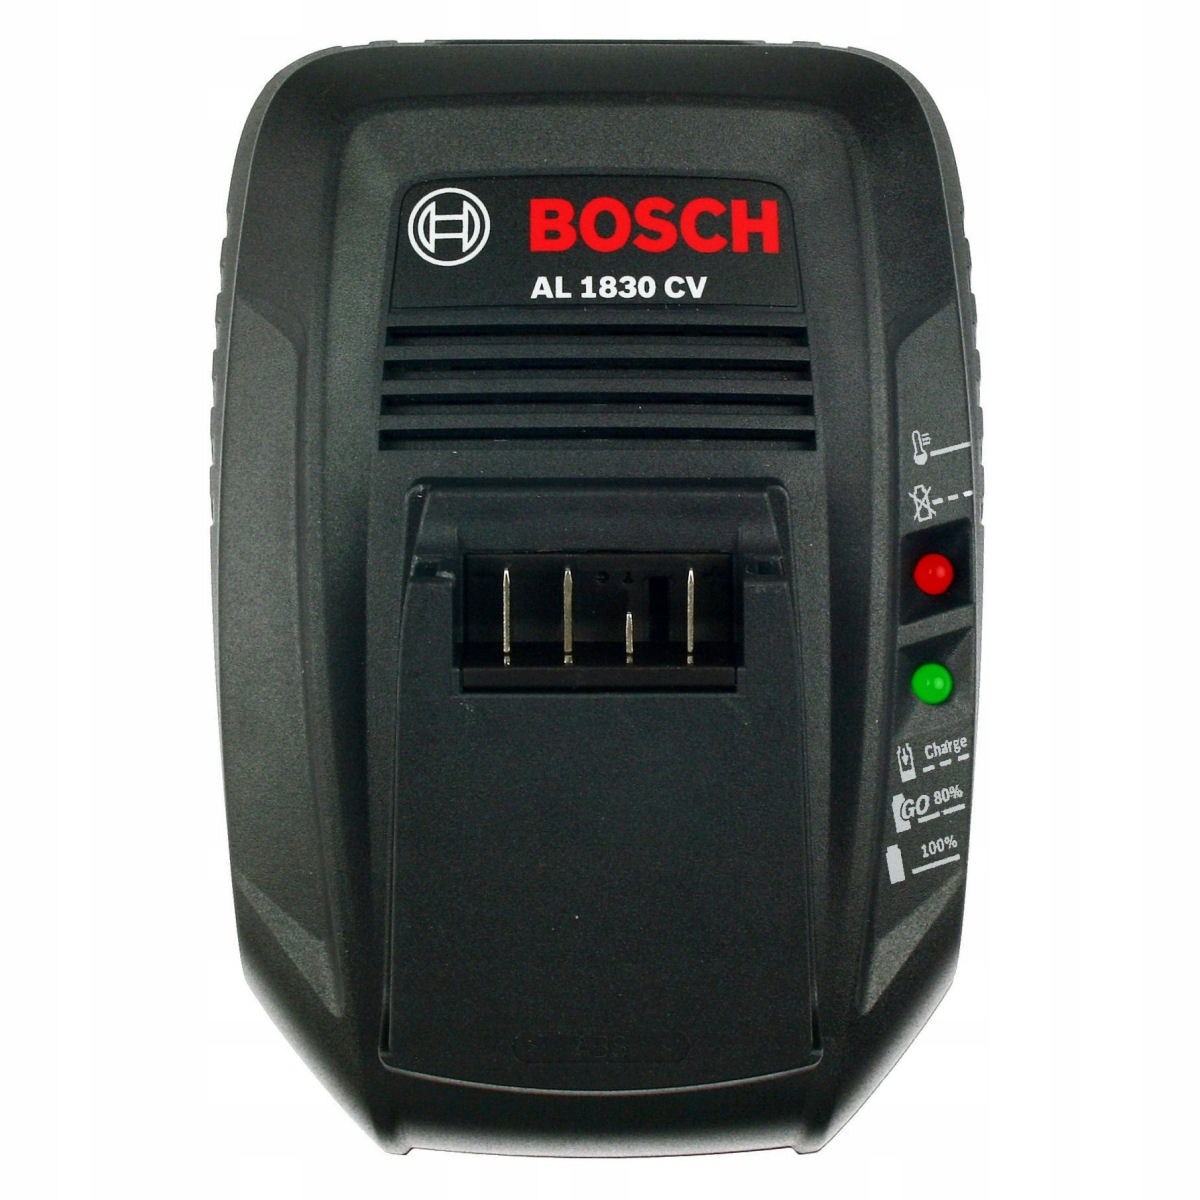 Cv bosch. Bosch al 1815 CV. Al 1830 CV Bosch. Зарядное устройство Bosch al 1830 CV. Al 1815 CV.